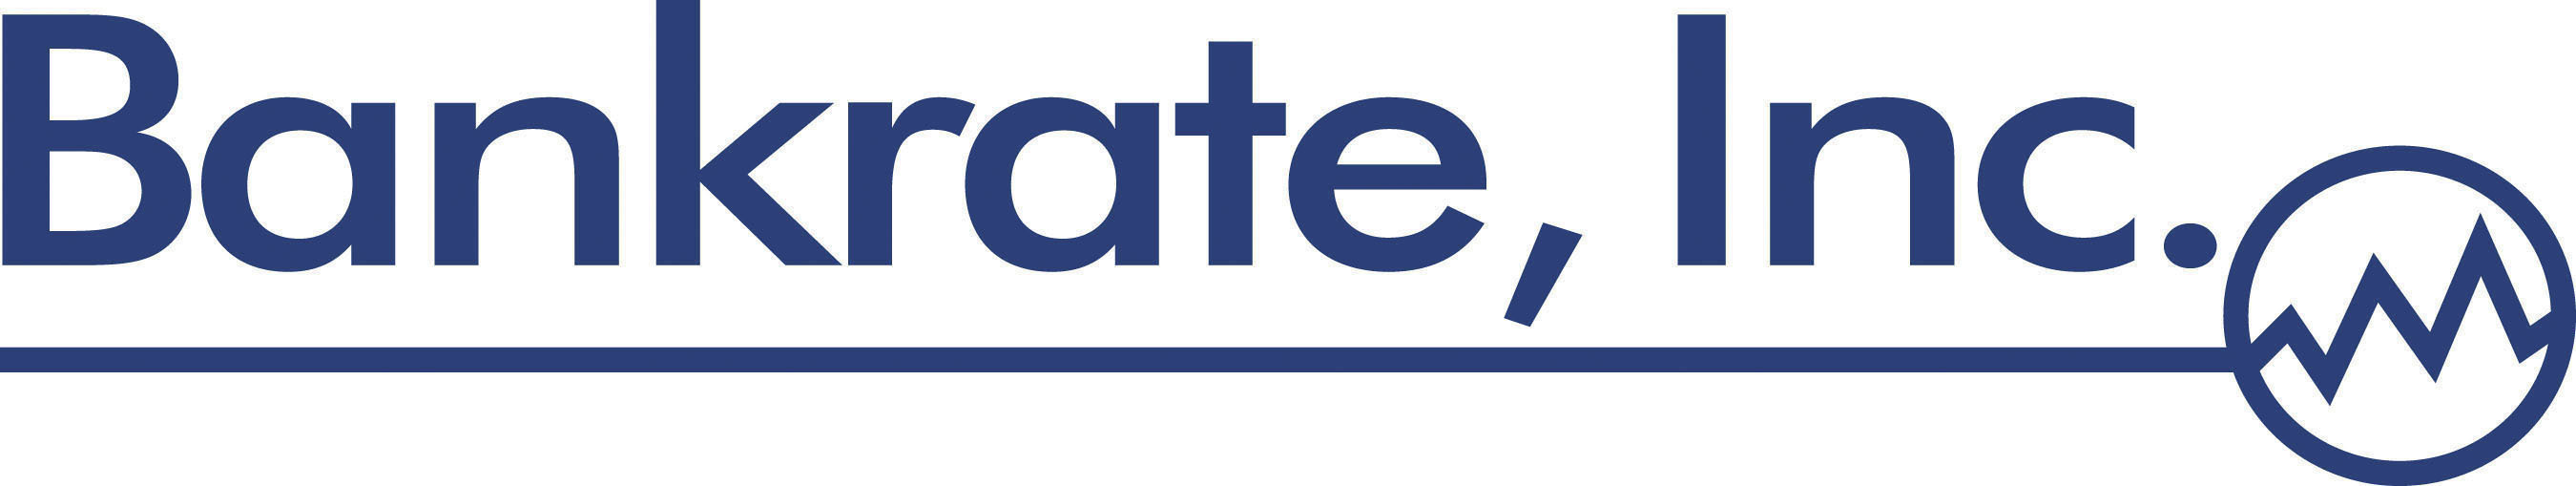 Bankrate, Inc. logo. (PRNewsFoto/Bankrate, Inc.) (PRNewsFoto/)